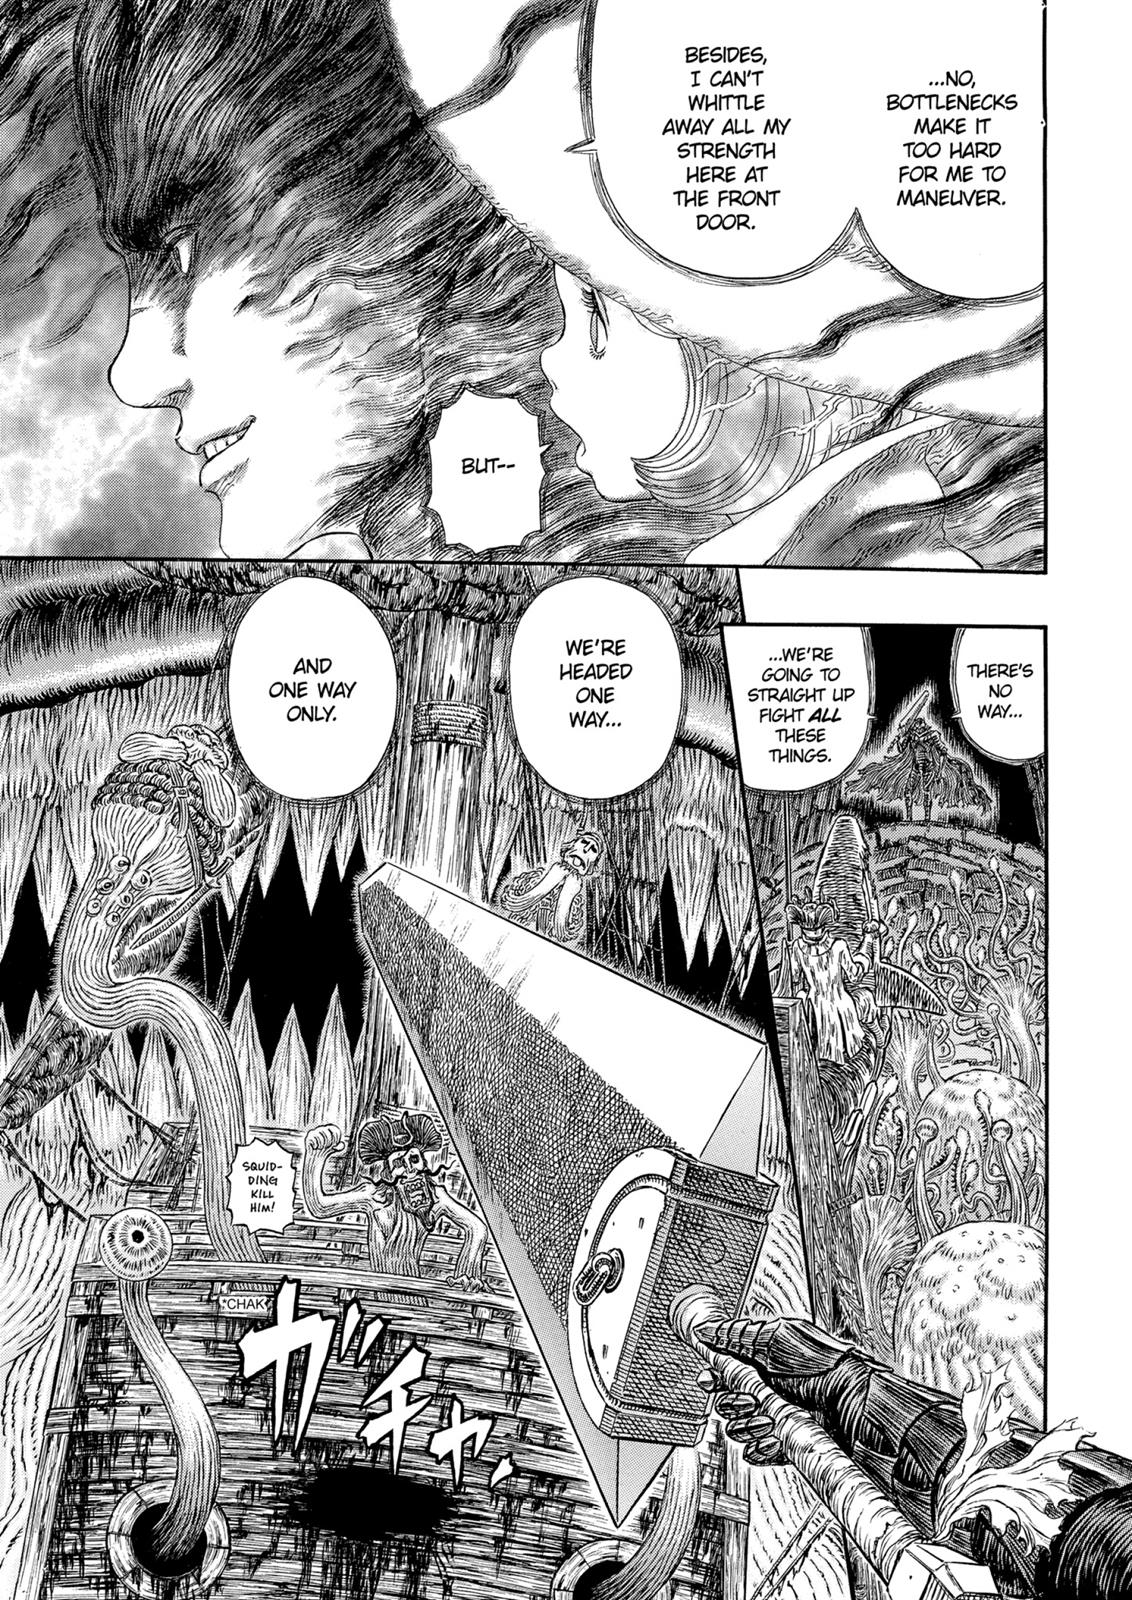 Berserk Manga Chapter 319 image 12